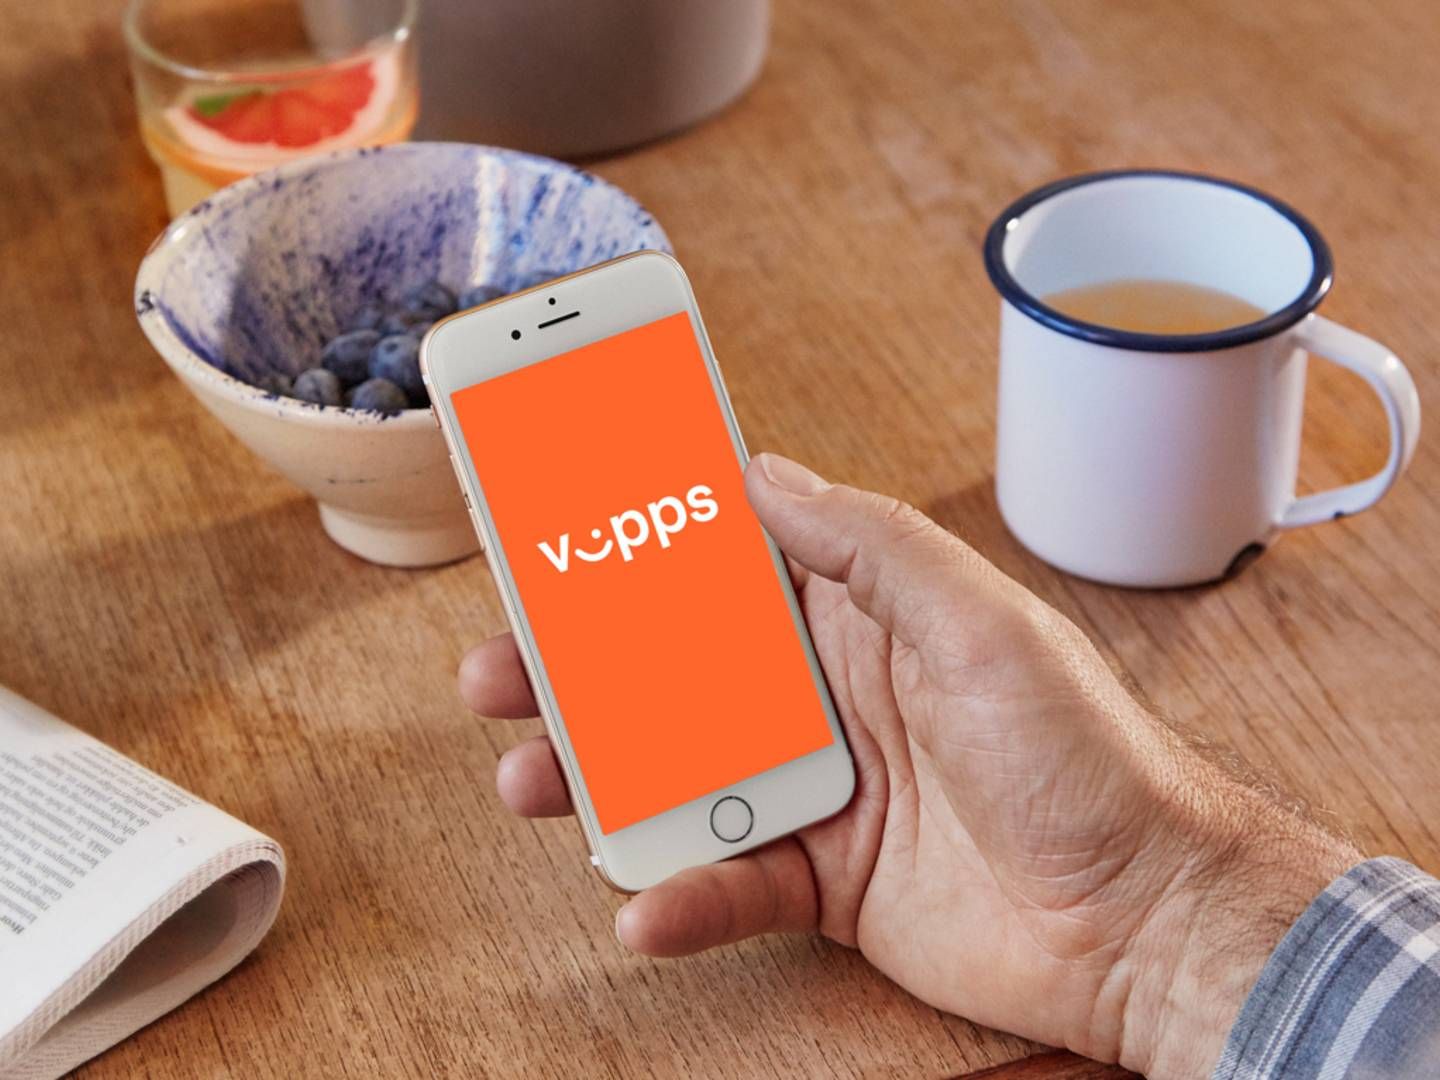 De norske bankene som eier Vipps får 65 prosent av eierskapet av det fusjonerte selskapet som vil bestå av Vipps, Mobilepay og Pivo. | Foto: PR/Vipps